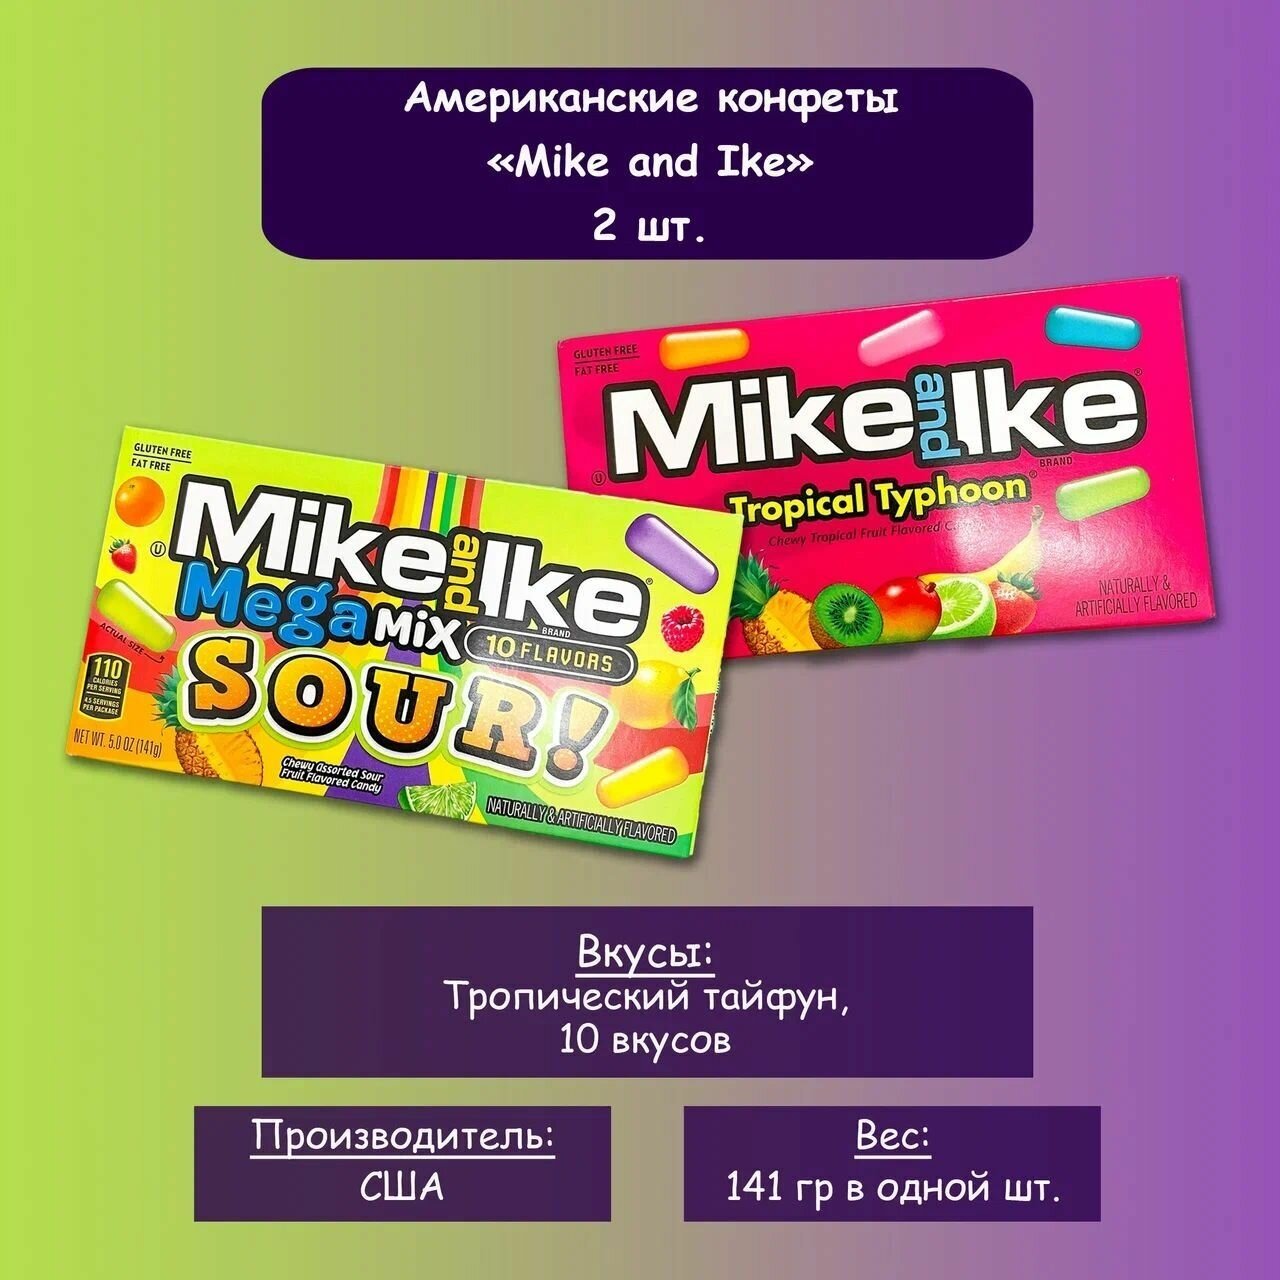 Mike and Ike / Американские конфеты Mike and Ike